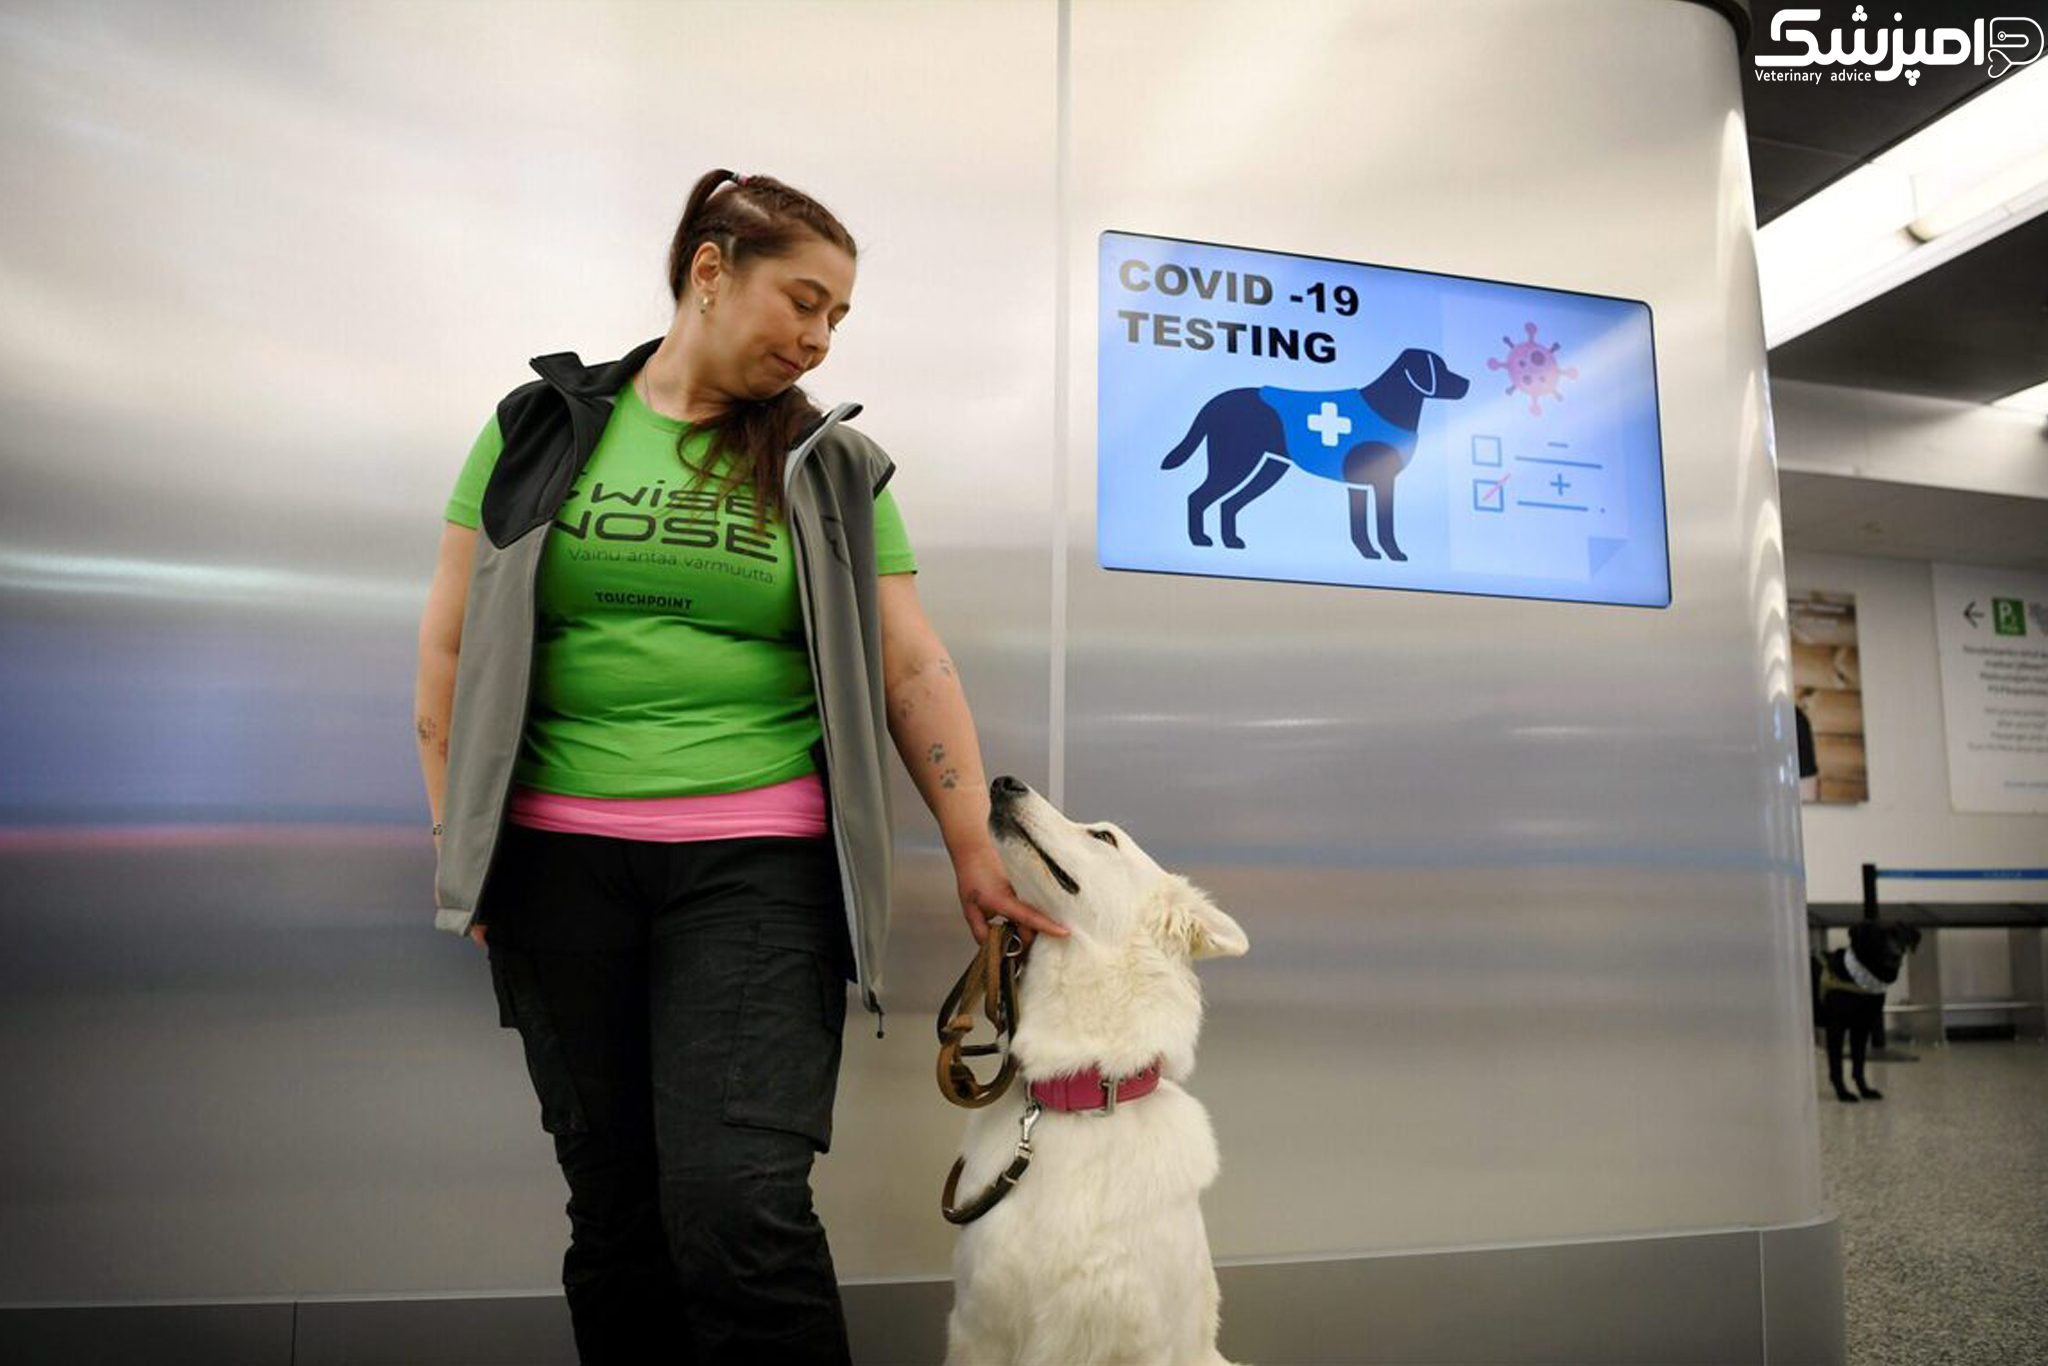 سگها بیماران مبتلا به کووید19 در فرودگاهها را شناسایی خواهند کرد